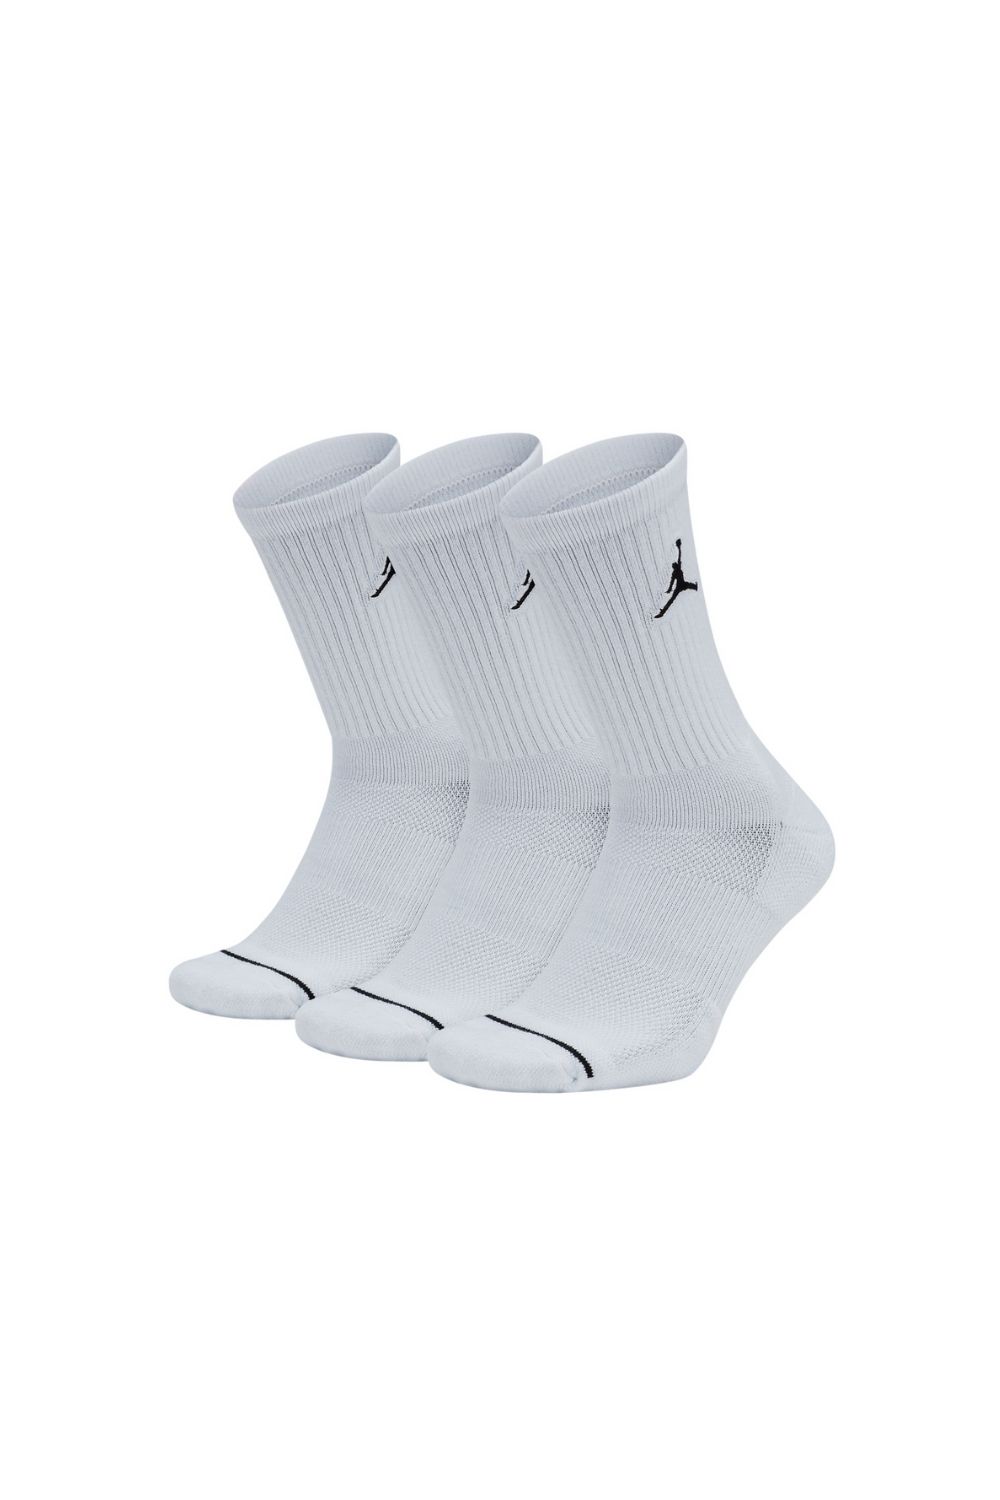 NIKE - Σετ unisex κάλτσες JORDAN EVRY MAX CREW λευκές Γυναικεία/Αξεσουάρ/Κάλτσες